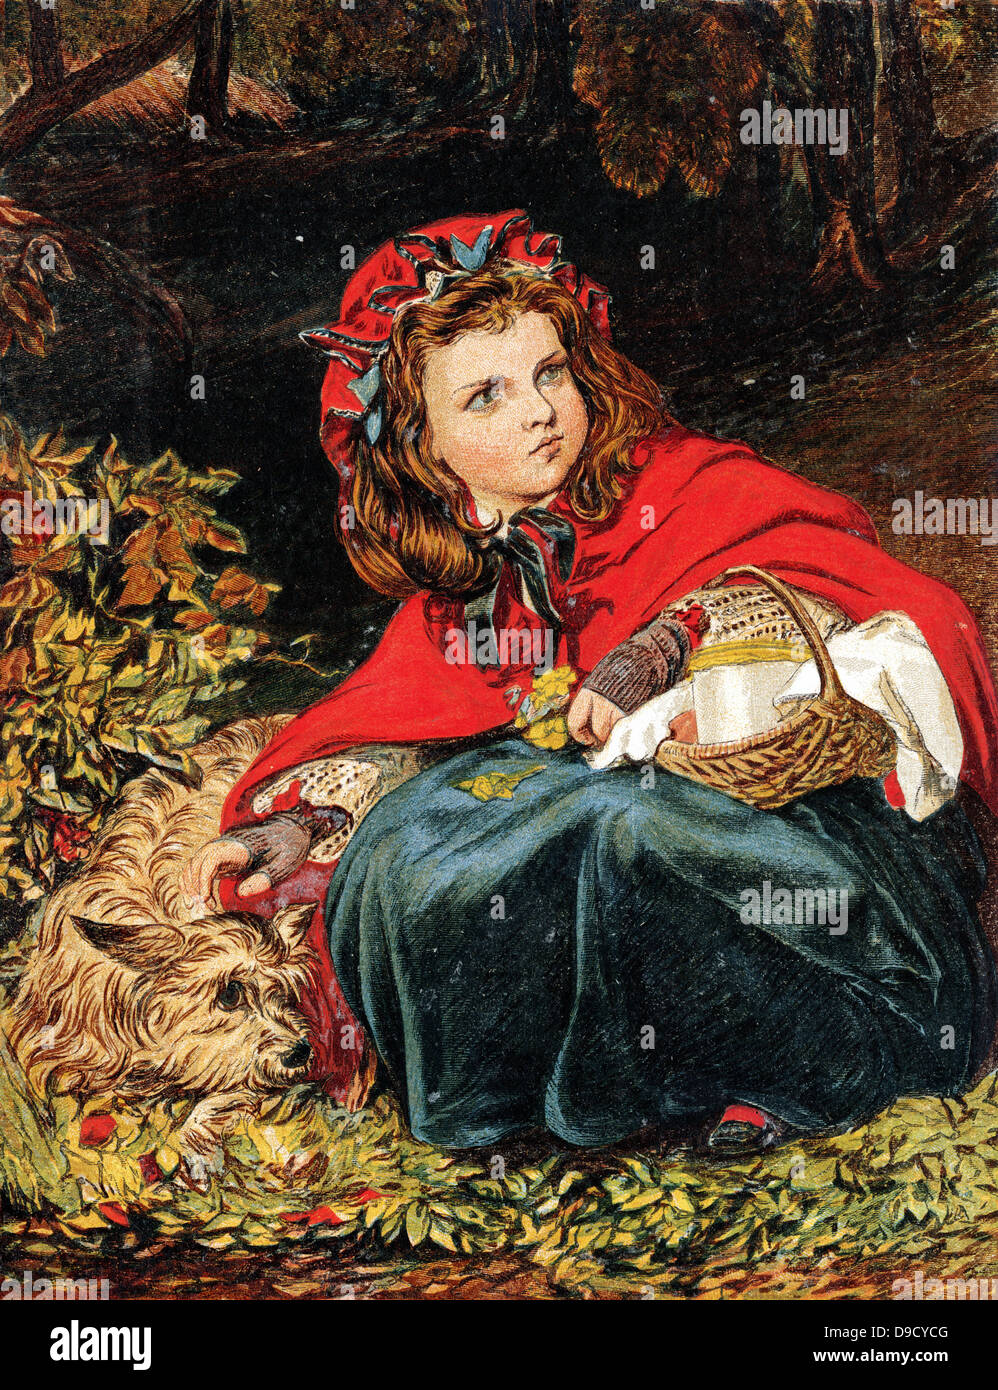 Rotkäppchen oder Kleine rote Kappe Märchen zunächst im Jahre 1697 von Charles Perrault (1628-1703) französischer Schriftsteller veröffentlicht. Chromolithograph c 1890. Stockfoto